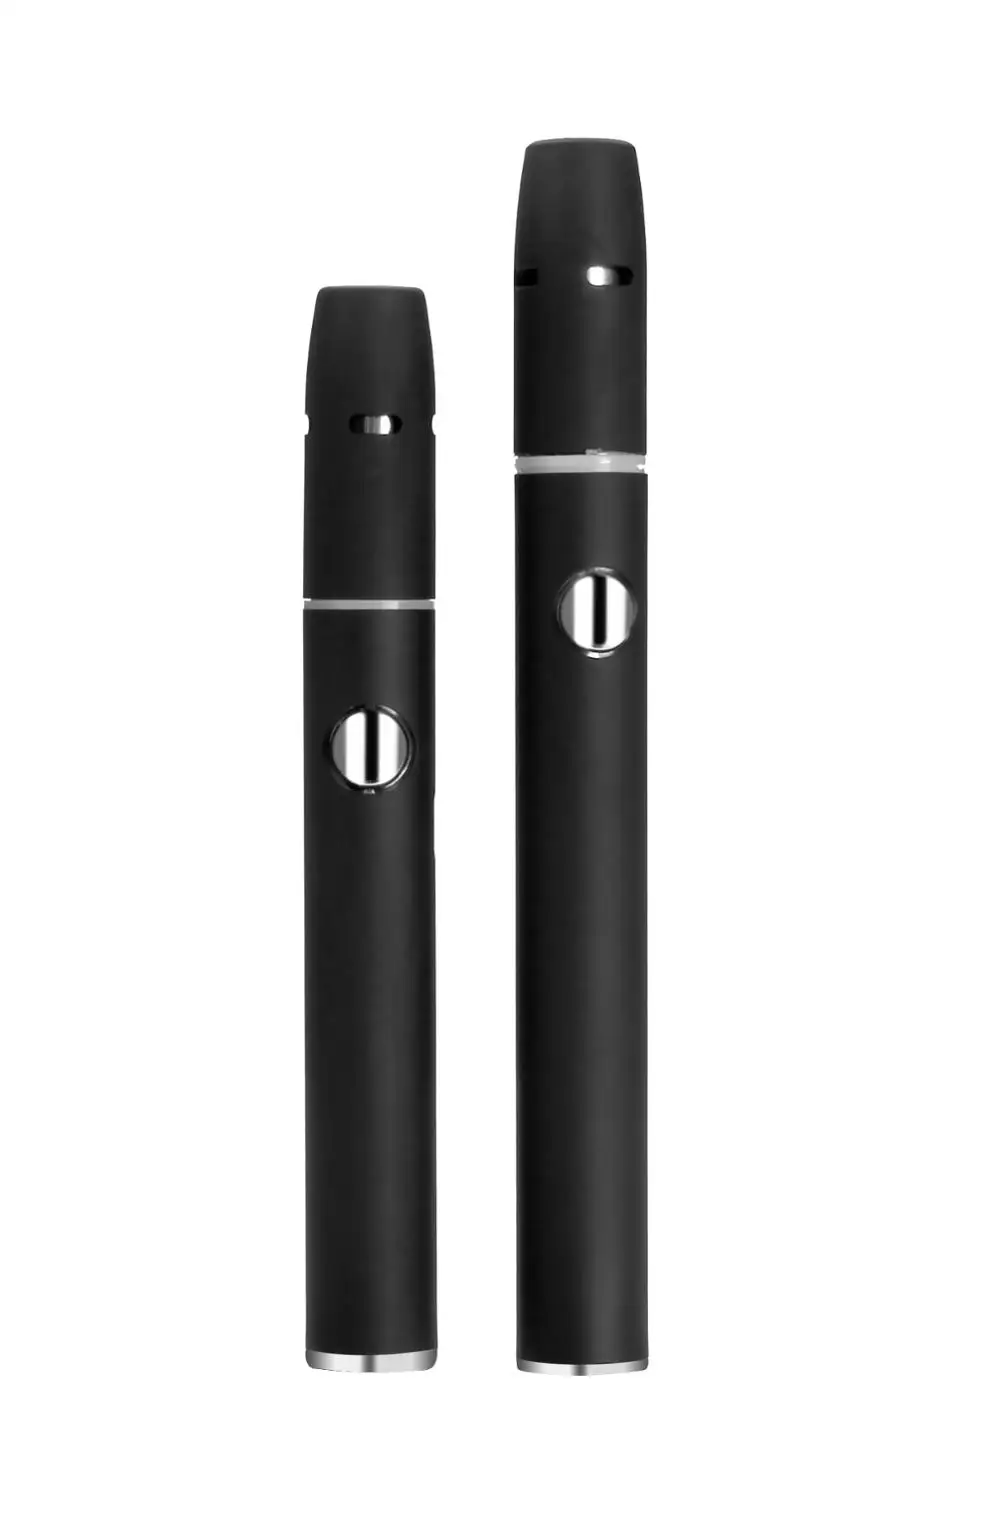 2021 трендовый продукт, электронная сигарета Pluscig V2 с сухими травами, работающая с картриджами и сертификатом KC